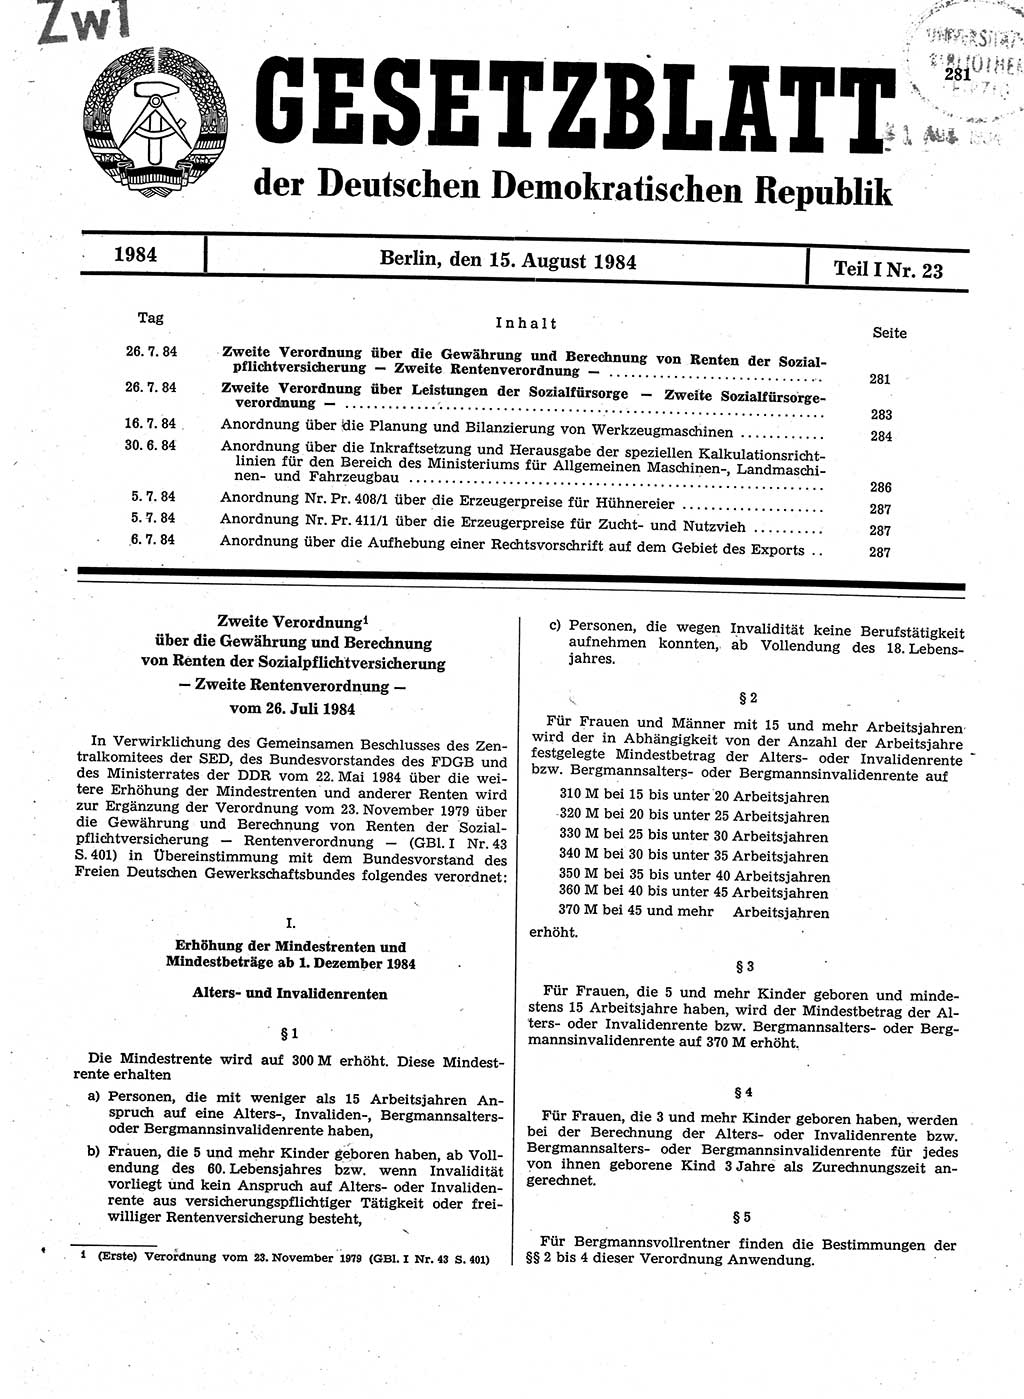 Gesetzblatt (GBl.) der Deutschen Demokratischen Republik (DDR) Teil Ⅰ 1984, Seite 281 (GBl. DDR Ⅰ 1984, S. 281)